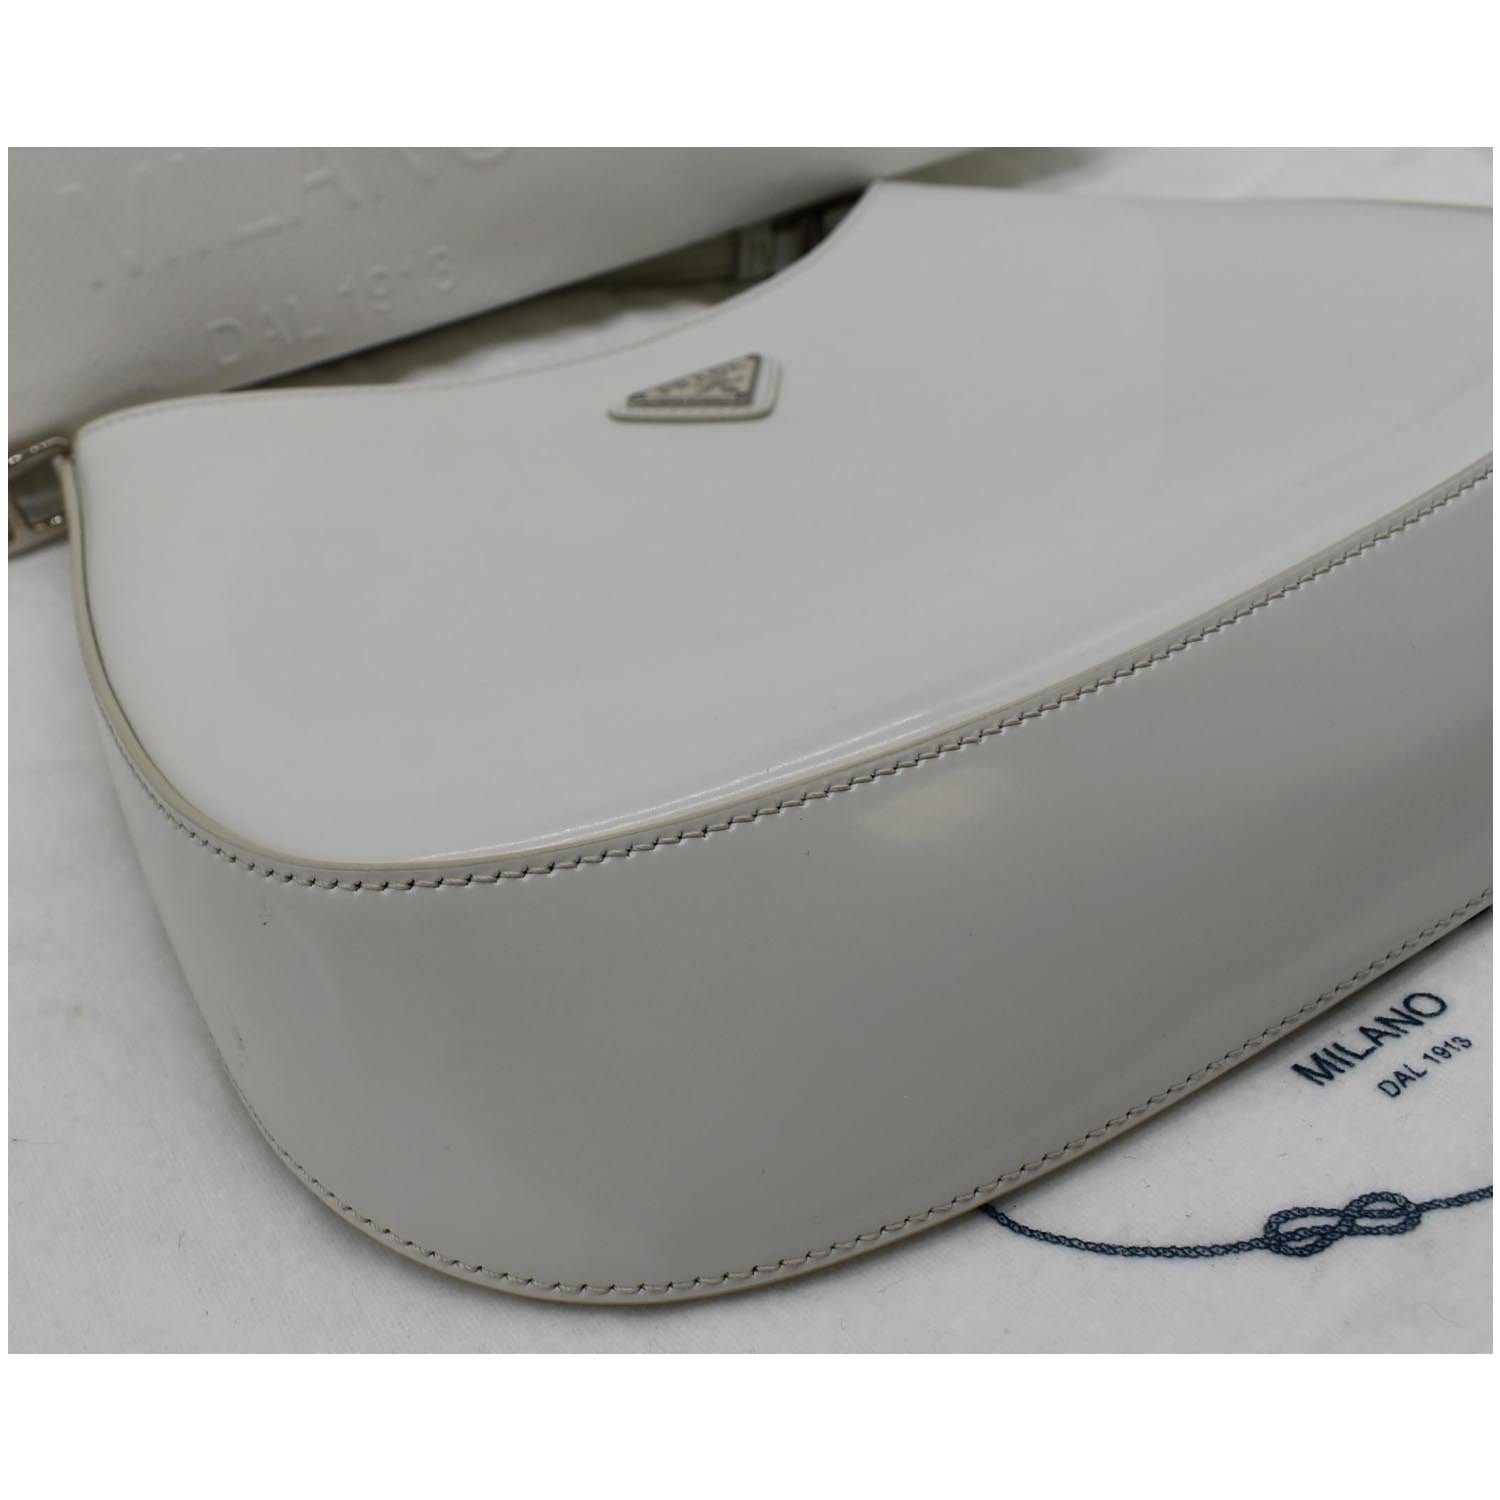 White Brushed-leather shoulder bag, Prada